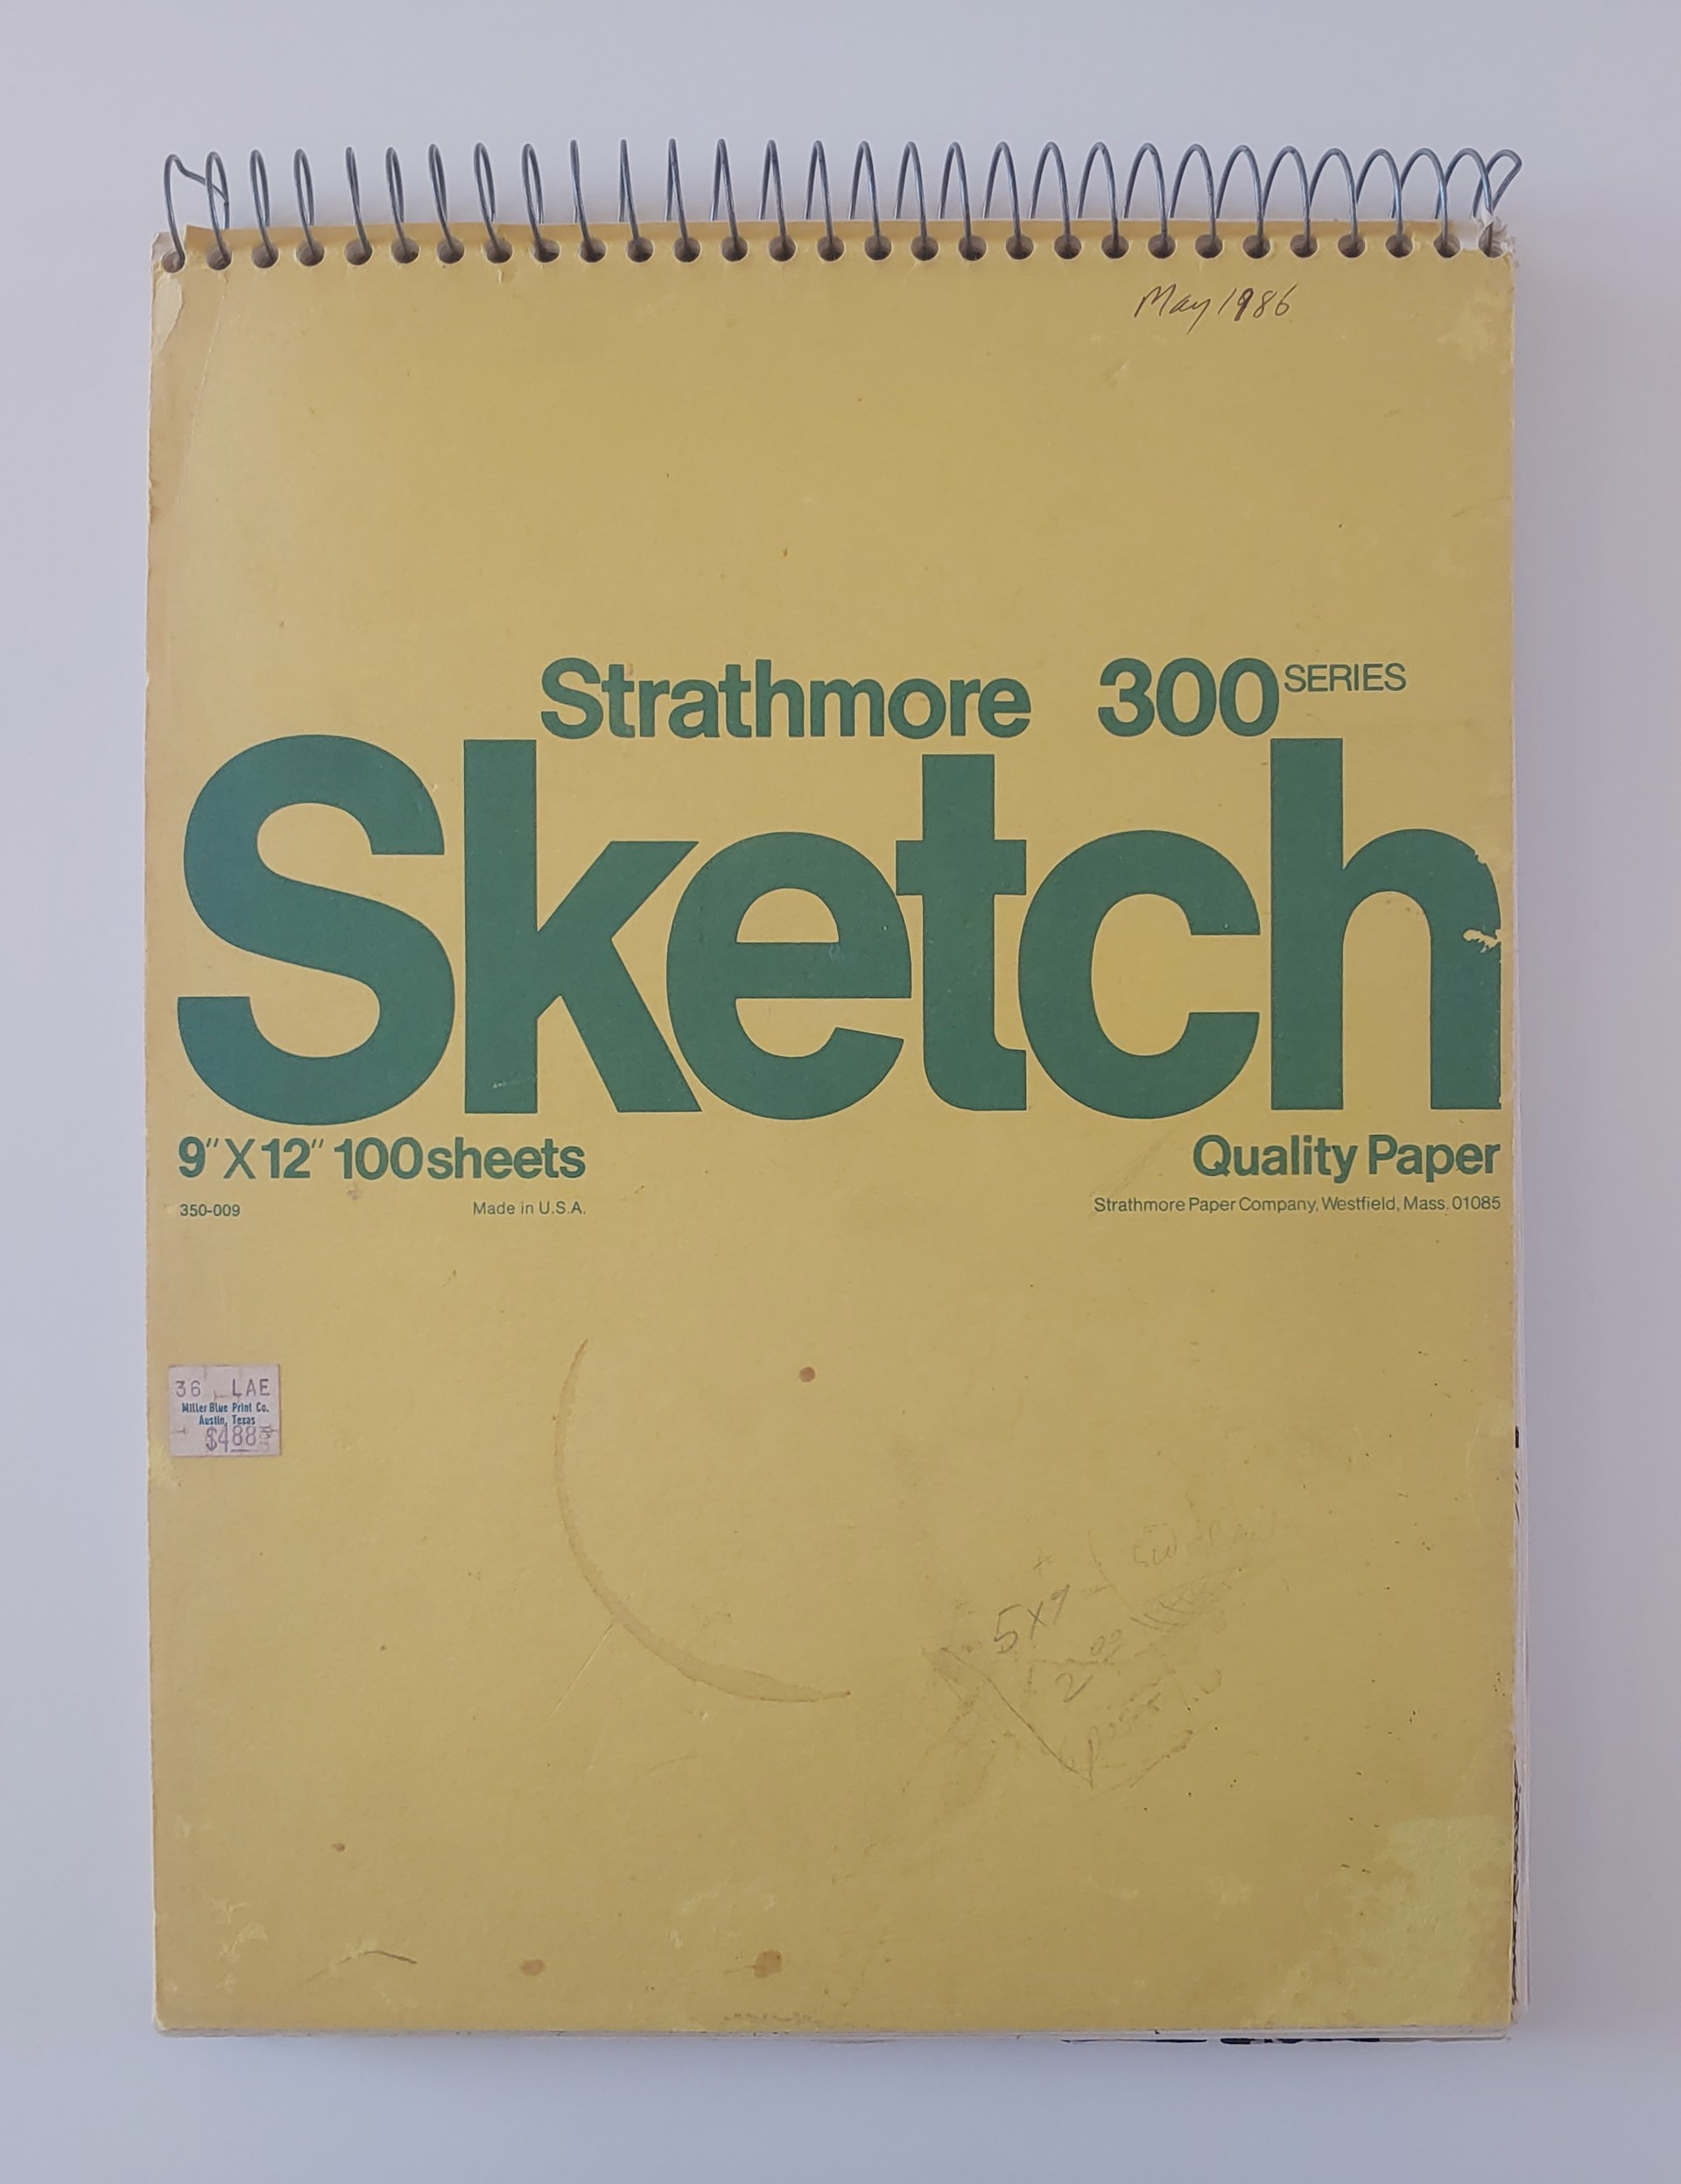 May 1986 Sketchbook by David Amdur